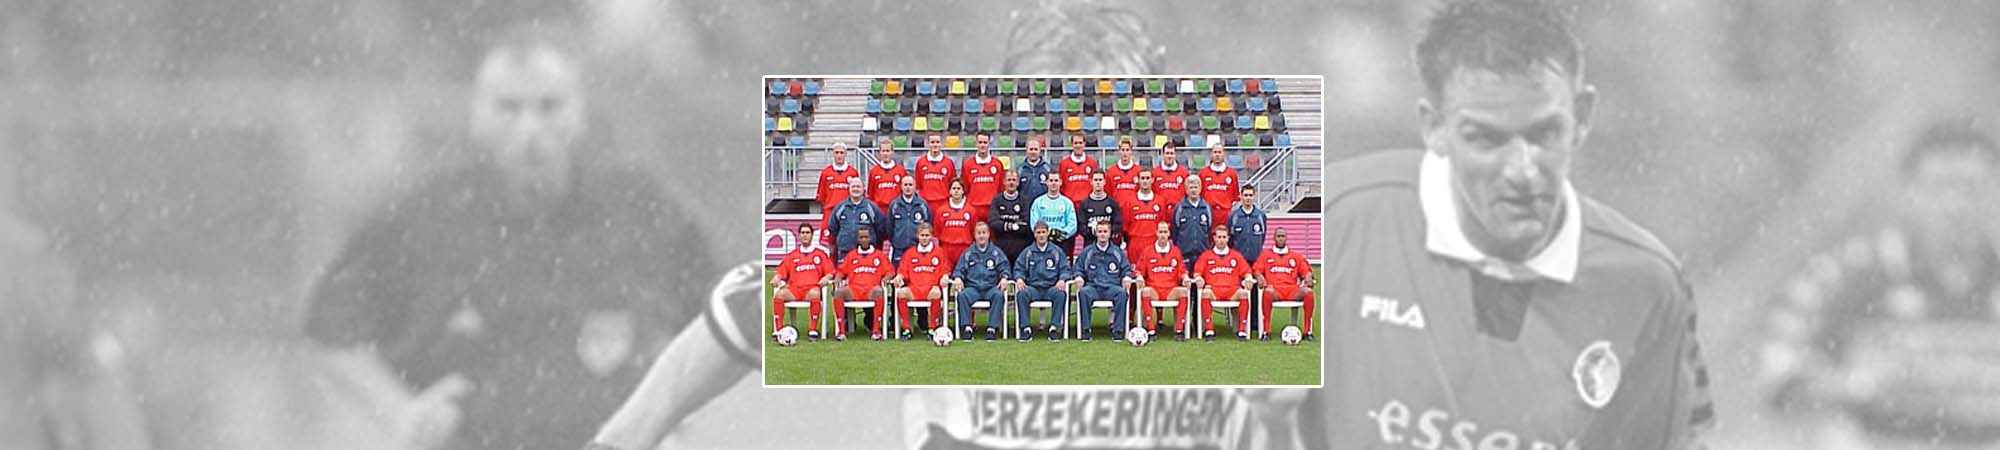 FC Twente seizoen 2000/2001